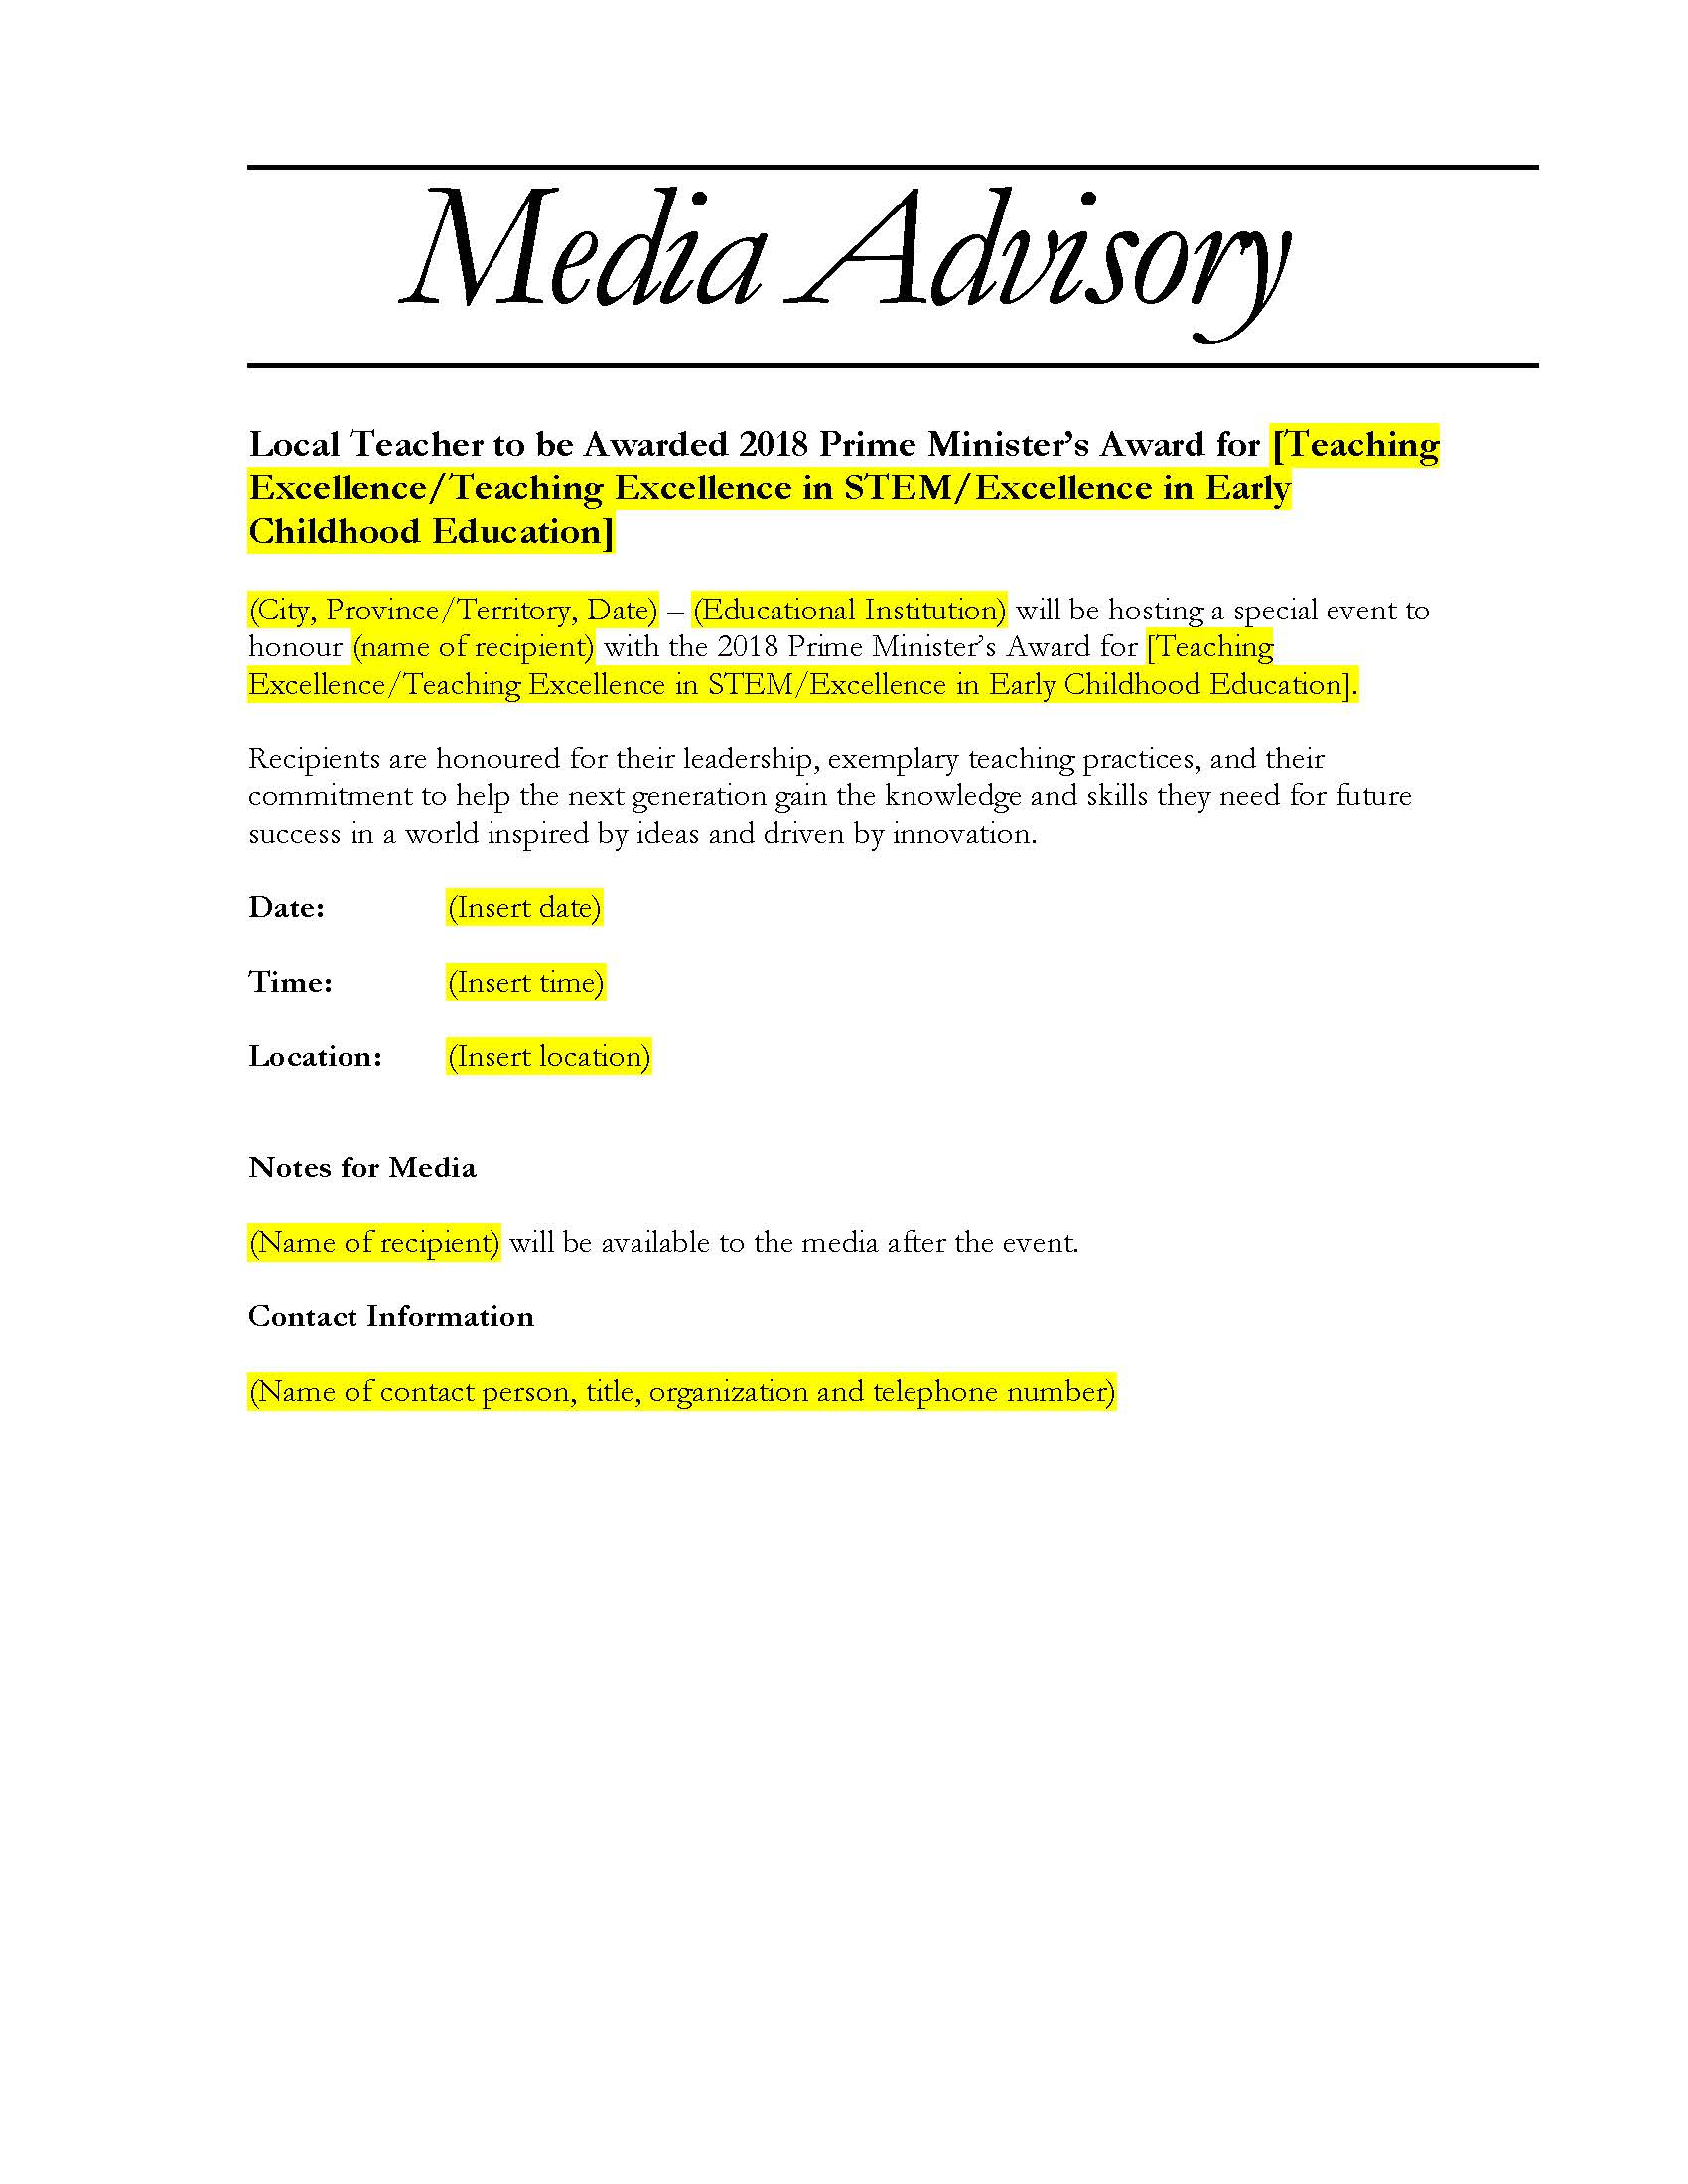 Media Advisory Example - Colona.rsd7 Pertaining To Media Advisory Template